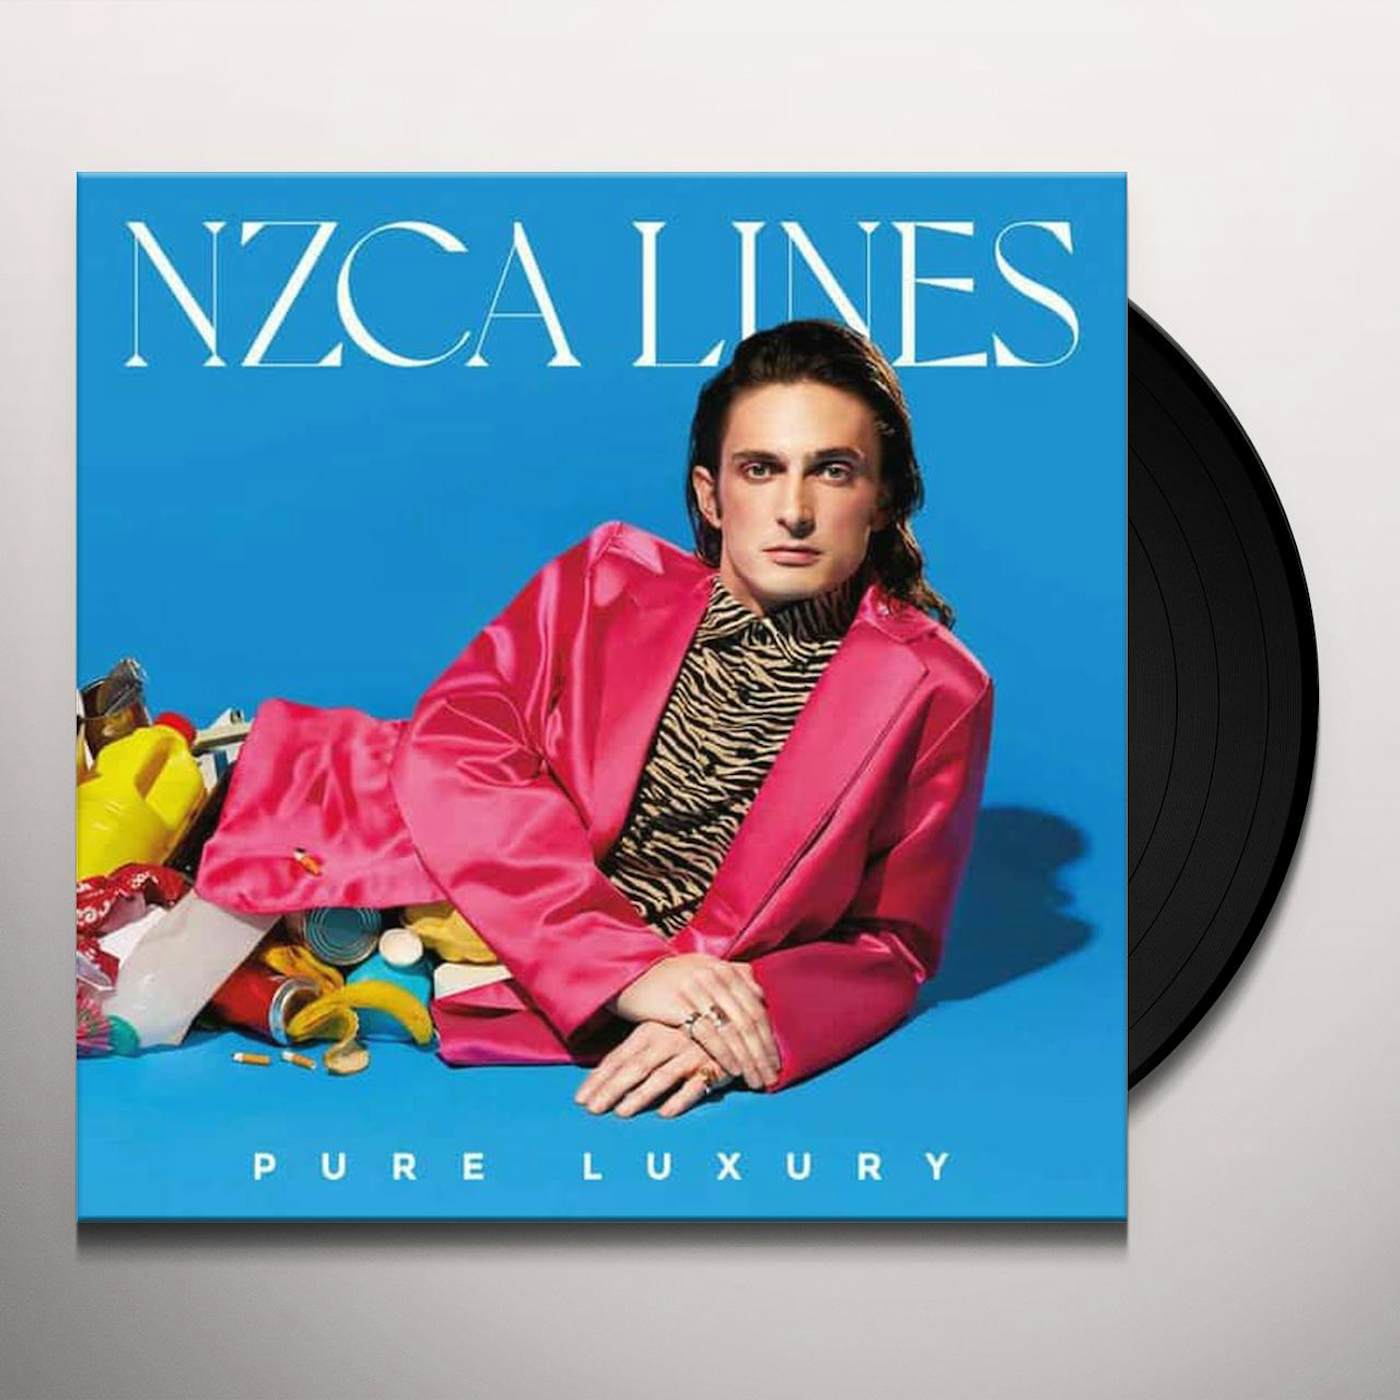 NZCA LINES PURE LUXURY Vinyl Record